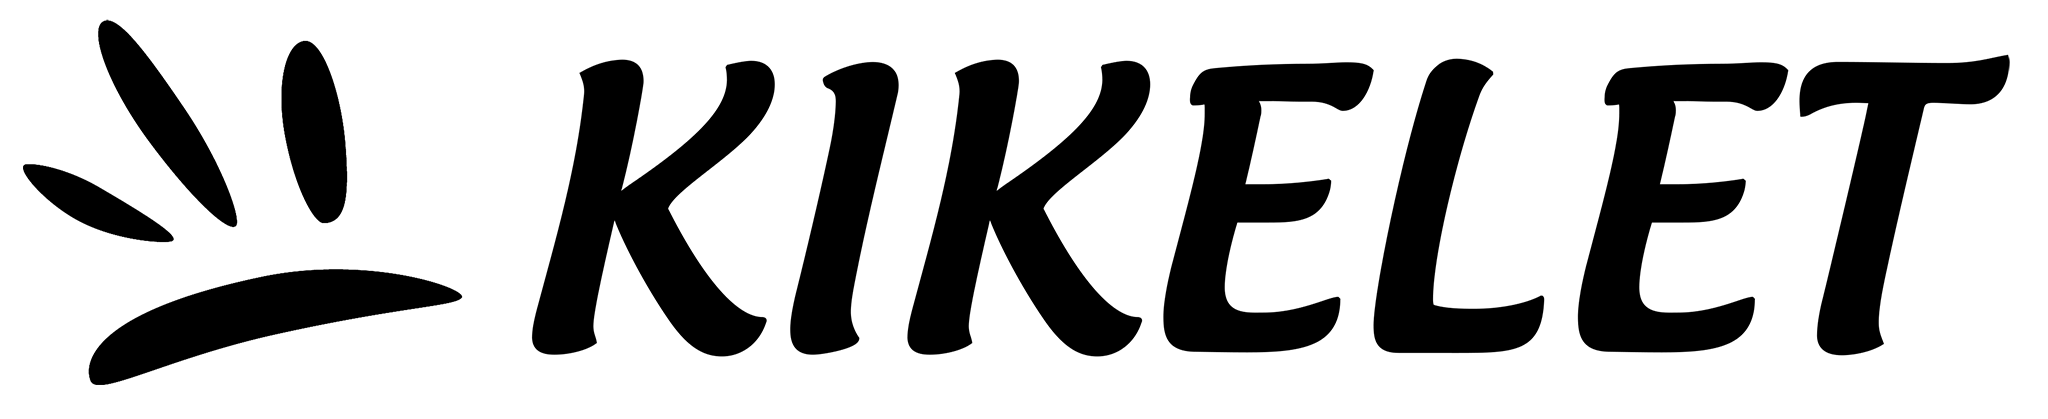 Kikelet Kassa logo